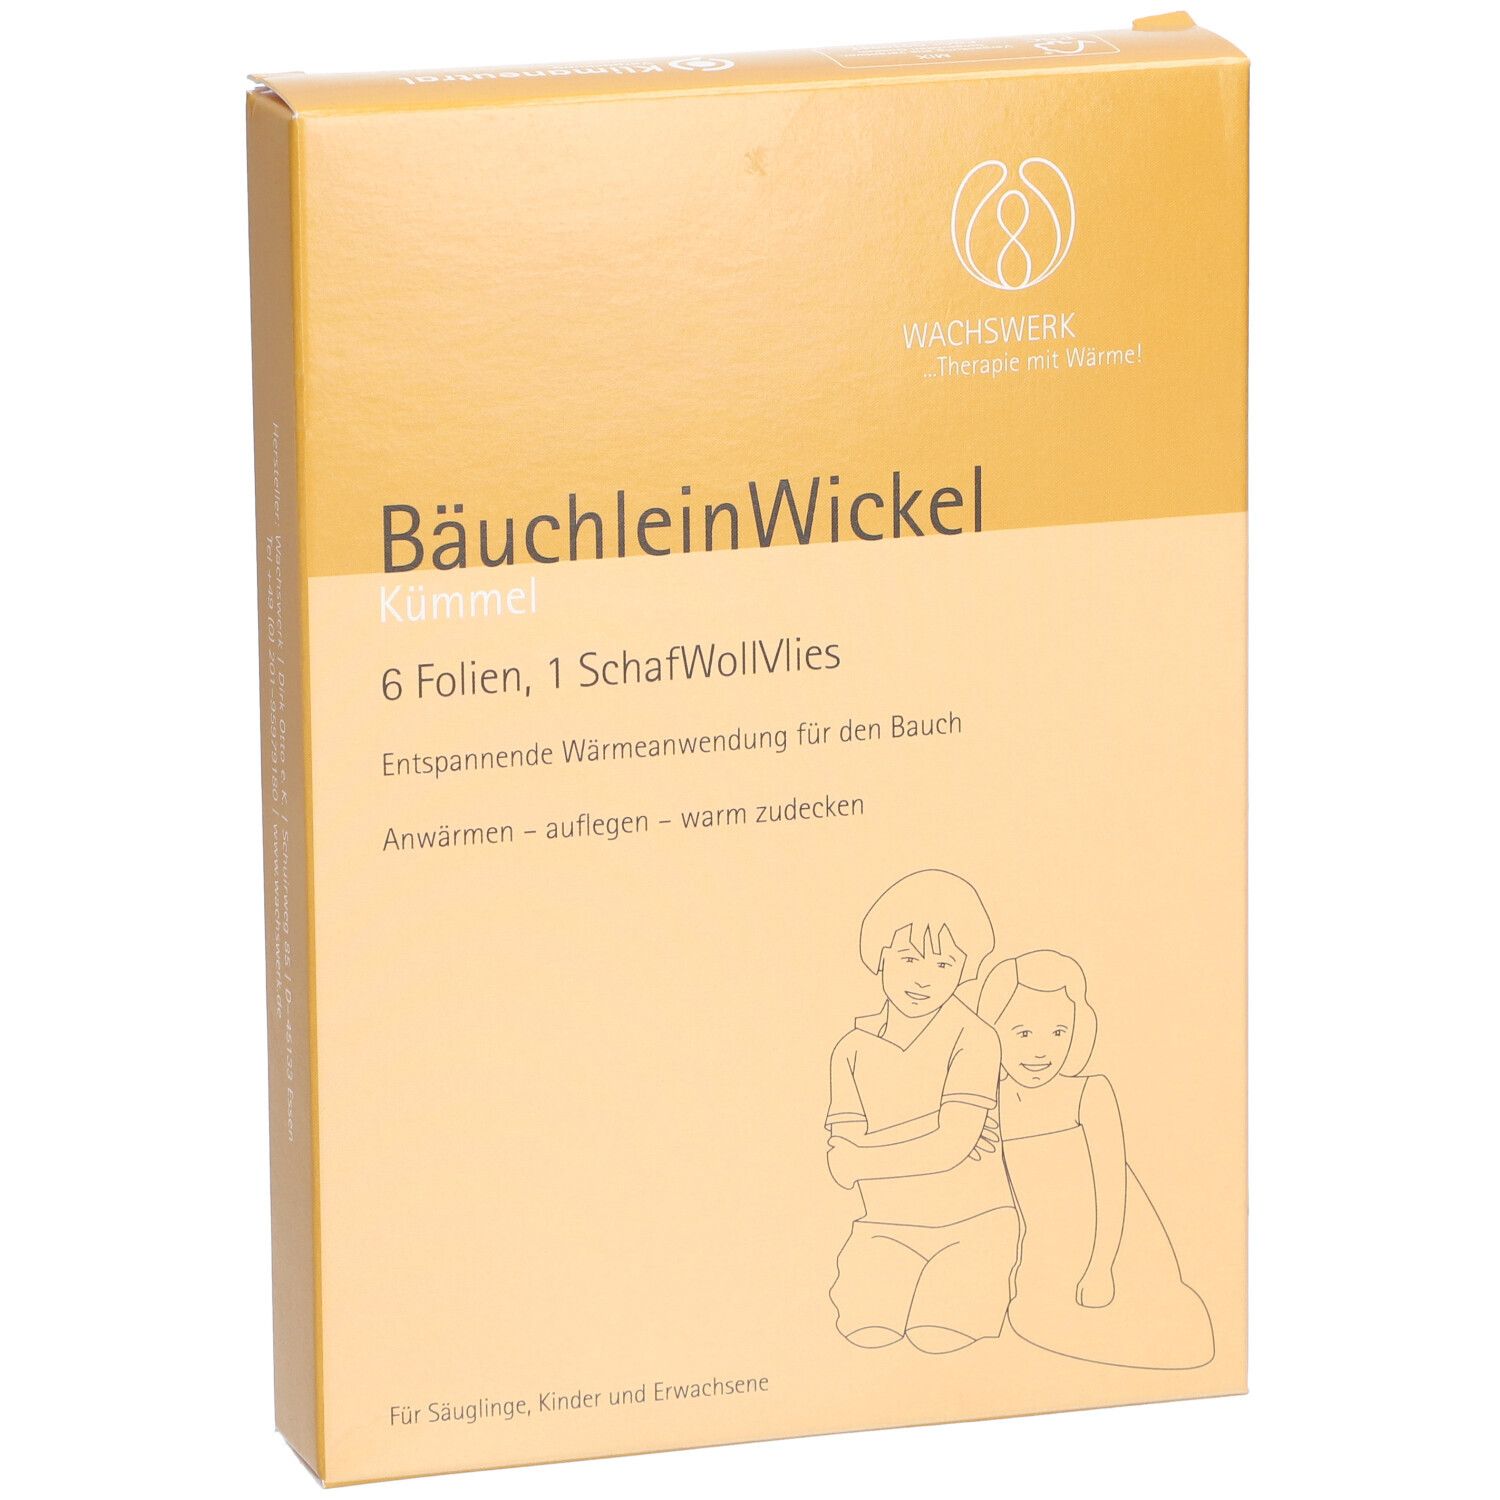 Baby-BäuchleinWickel Wachs mit Kümmellöl, 4x Wachsfolien, 5,00 €